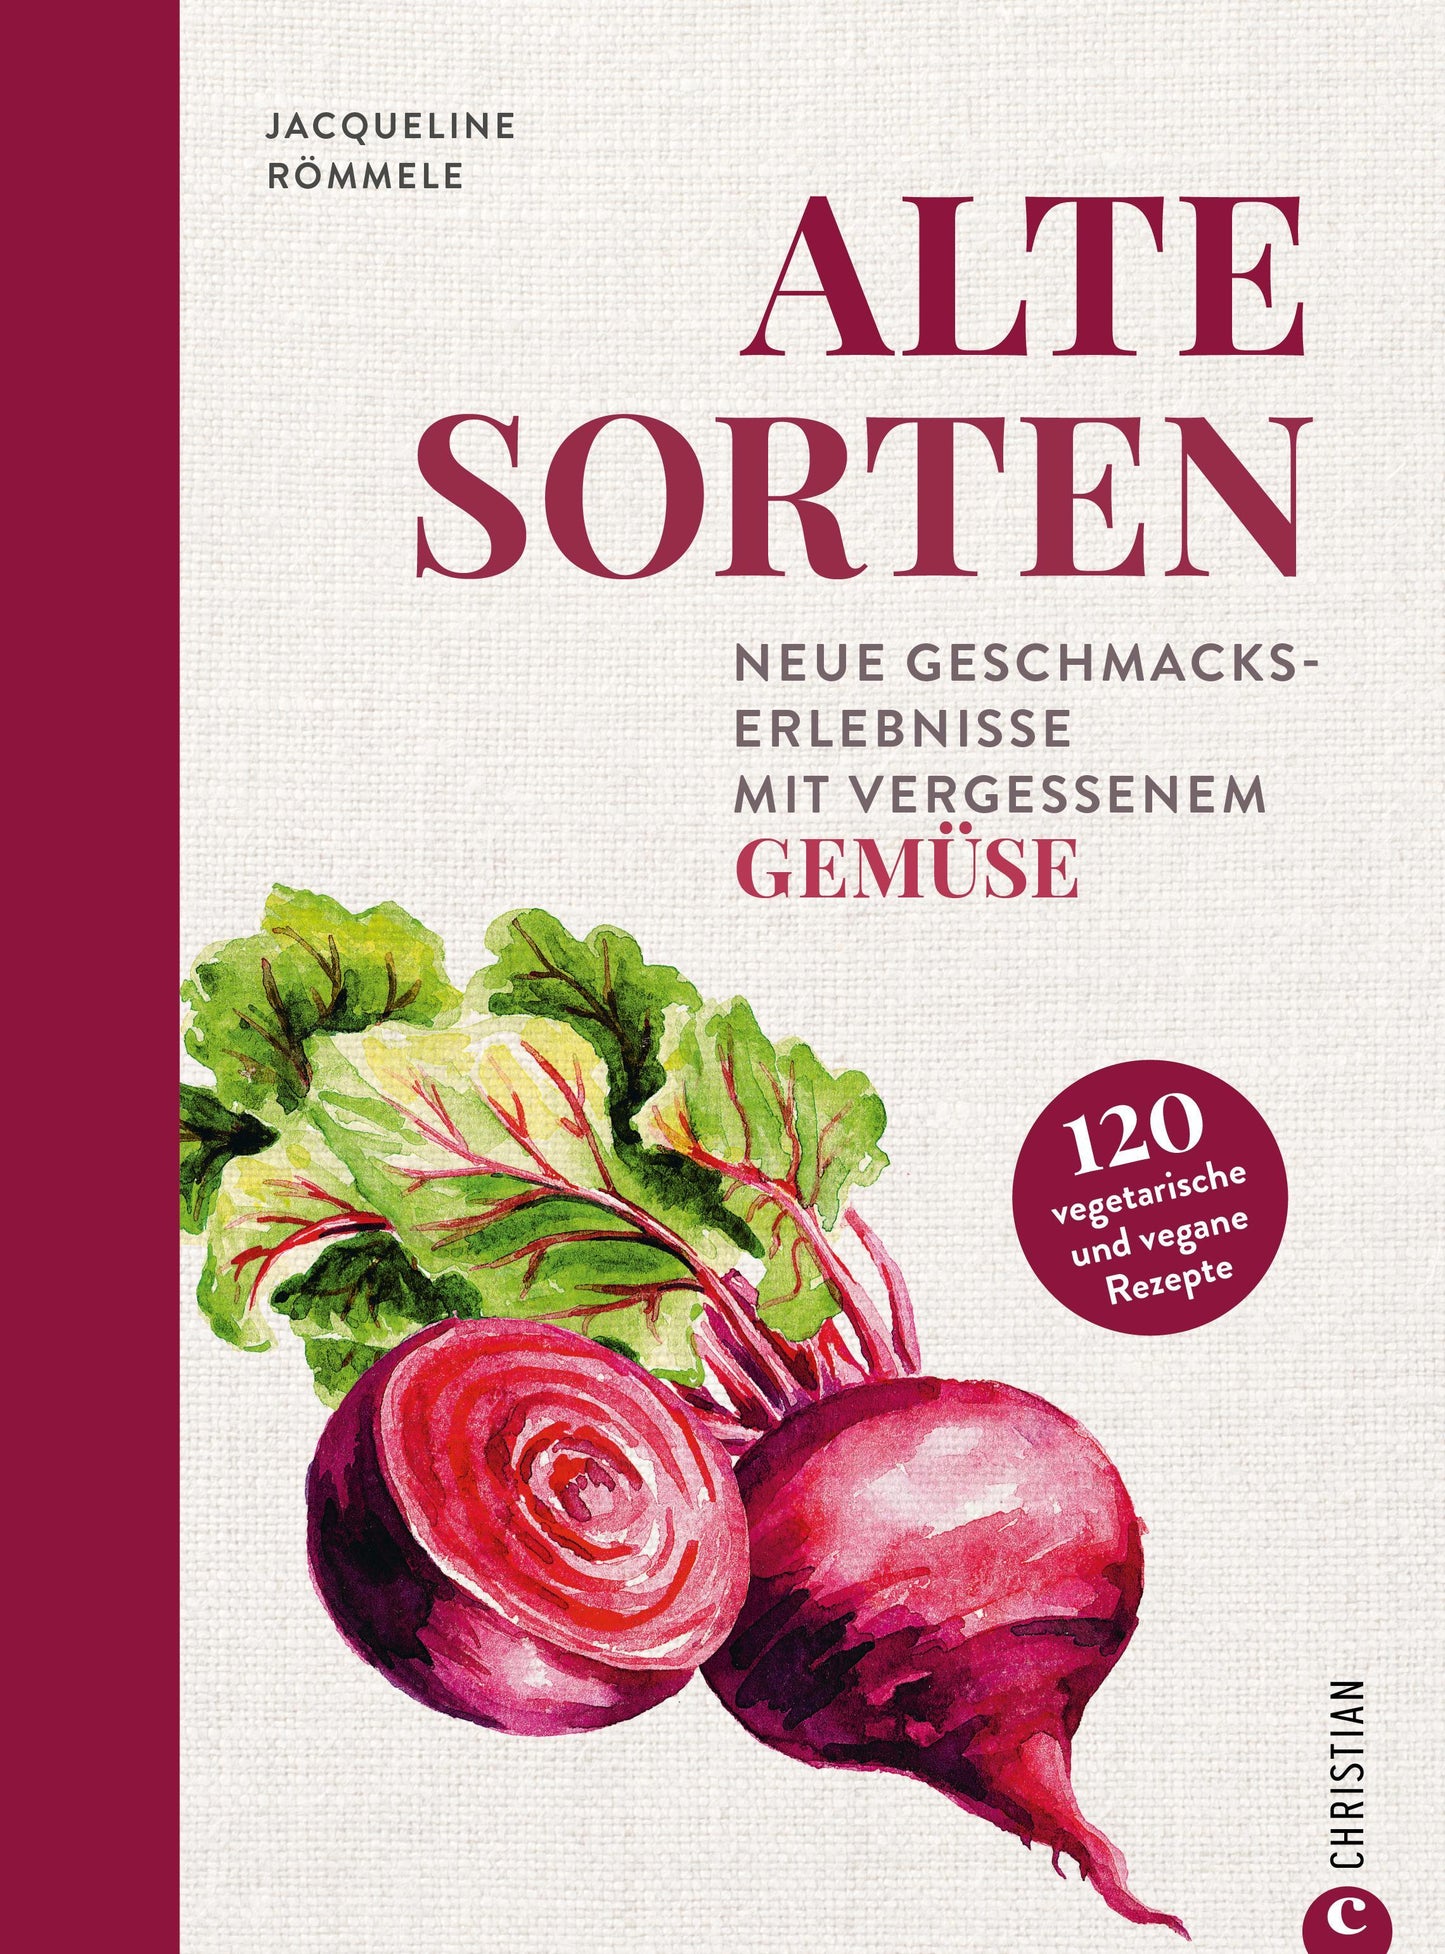 Gemüse-Kochbuch – Alte Sorten: Saisonal kochen mit vergessenen Gemüsesorten. Veggie Kochbuch mit 120 vegetarischen & veganen Rezepten von deftig bis süß. Inkl. Tipps zu Anbau und Ernte.